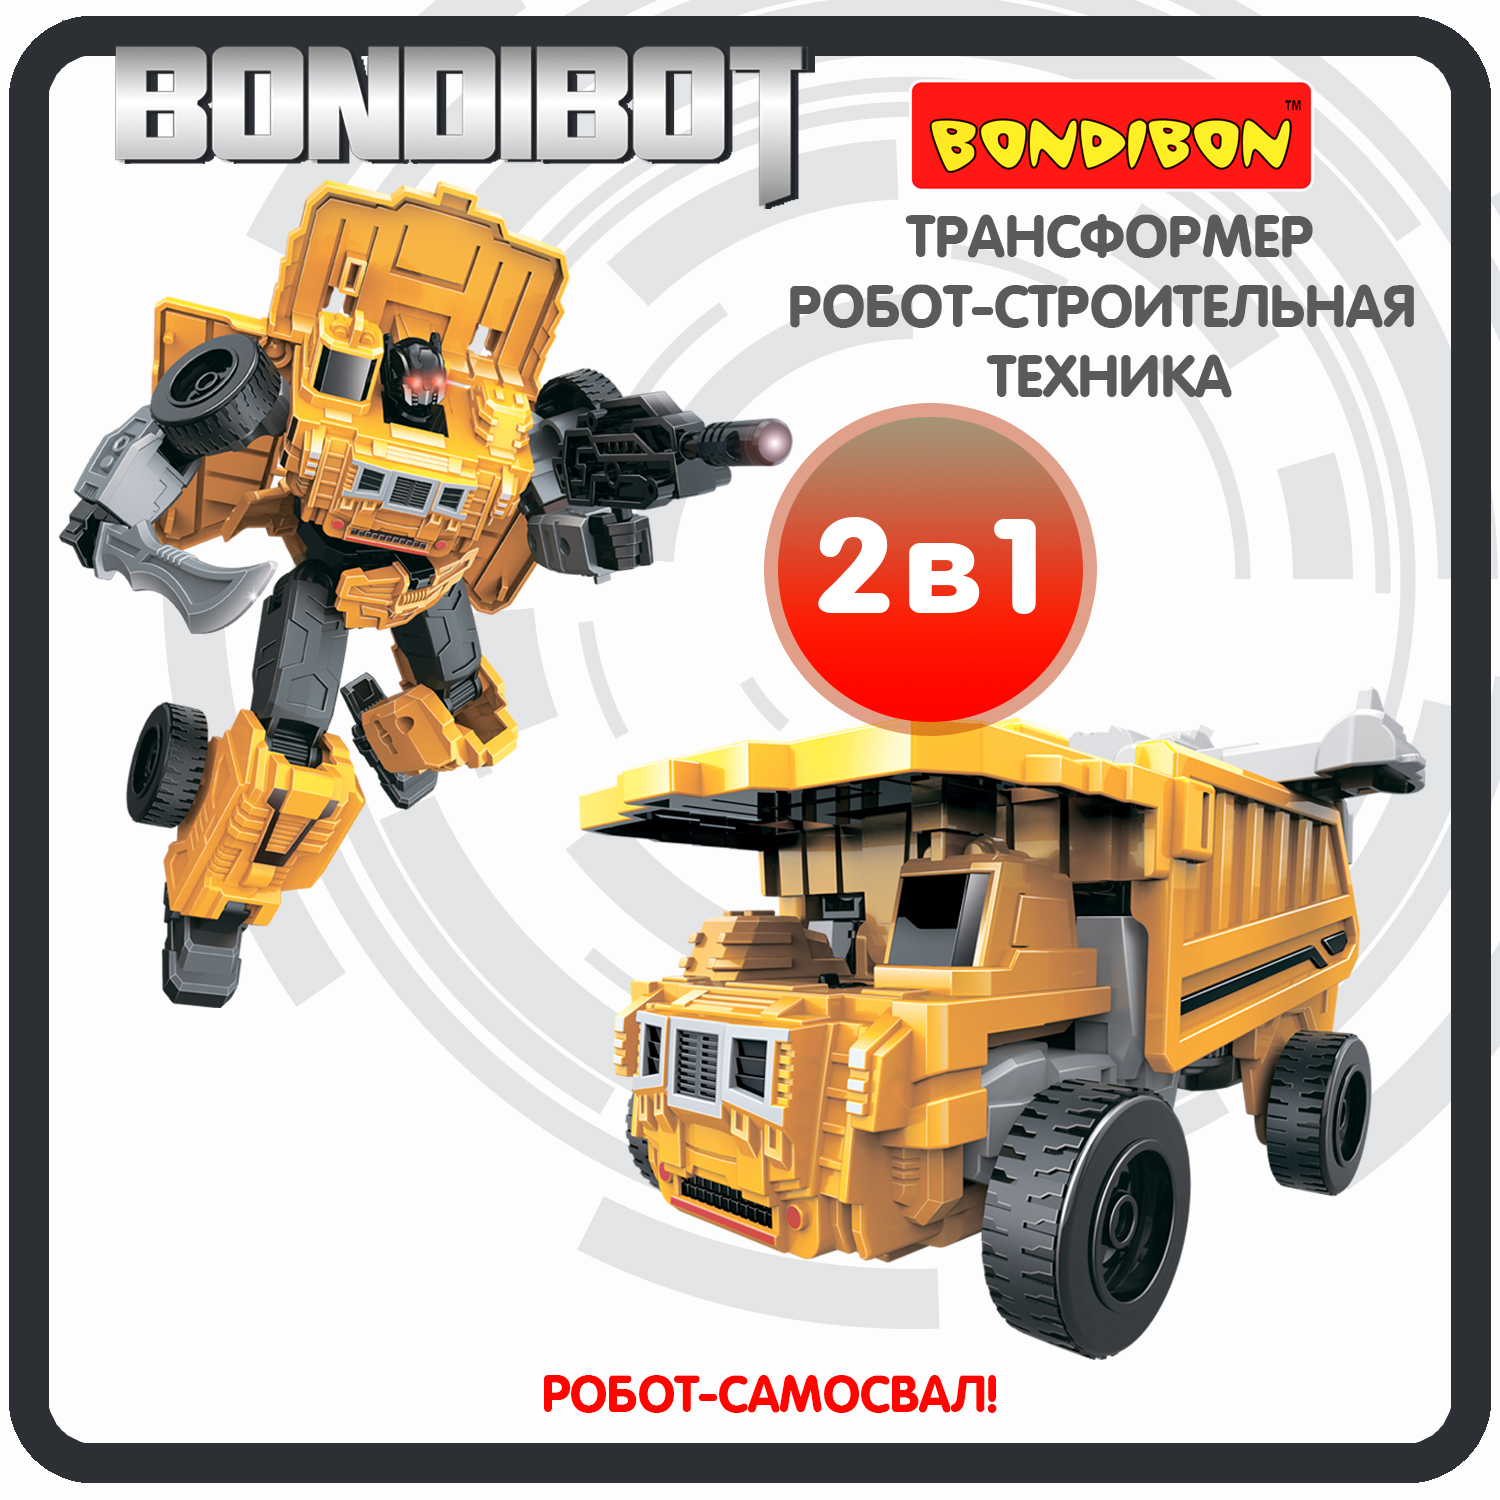 Трансформер робот-строительная техника, 2в1 BONDIBOT Bondibon, самосвал / ВВ6046